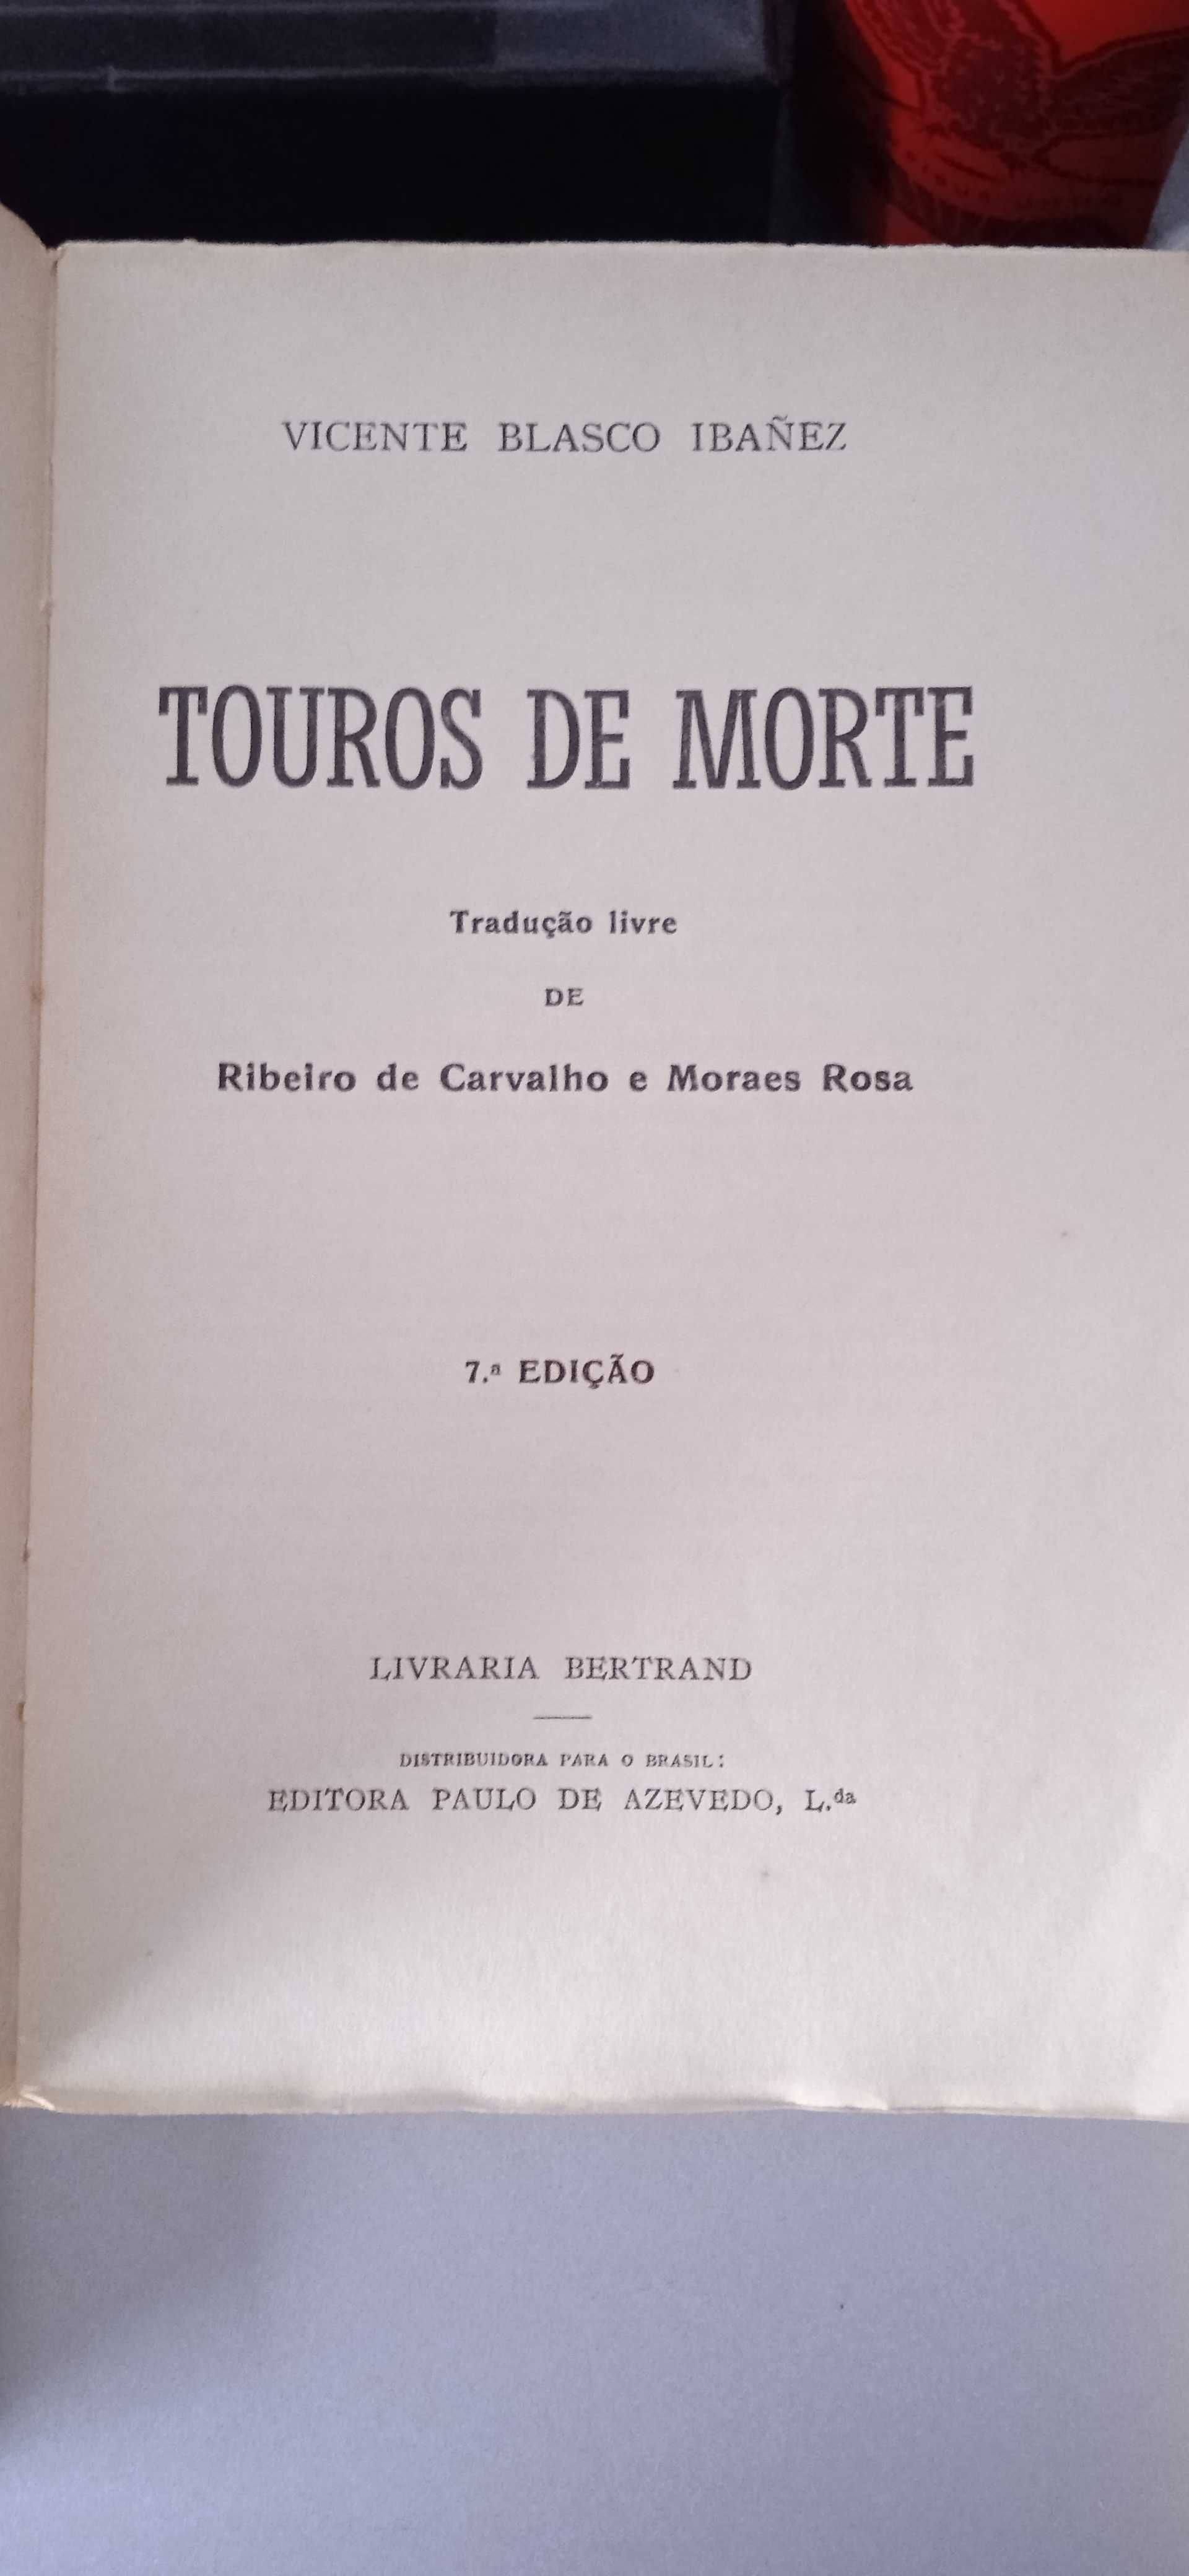 3 Livros de Vicente Blasco Ibanez, Livraria Bertrand